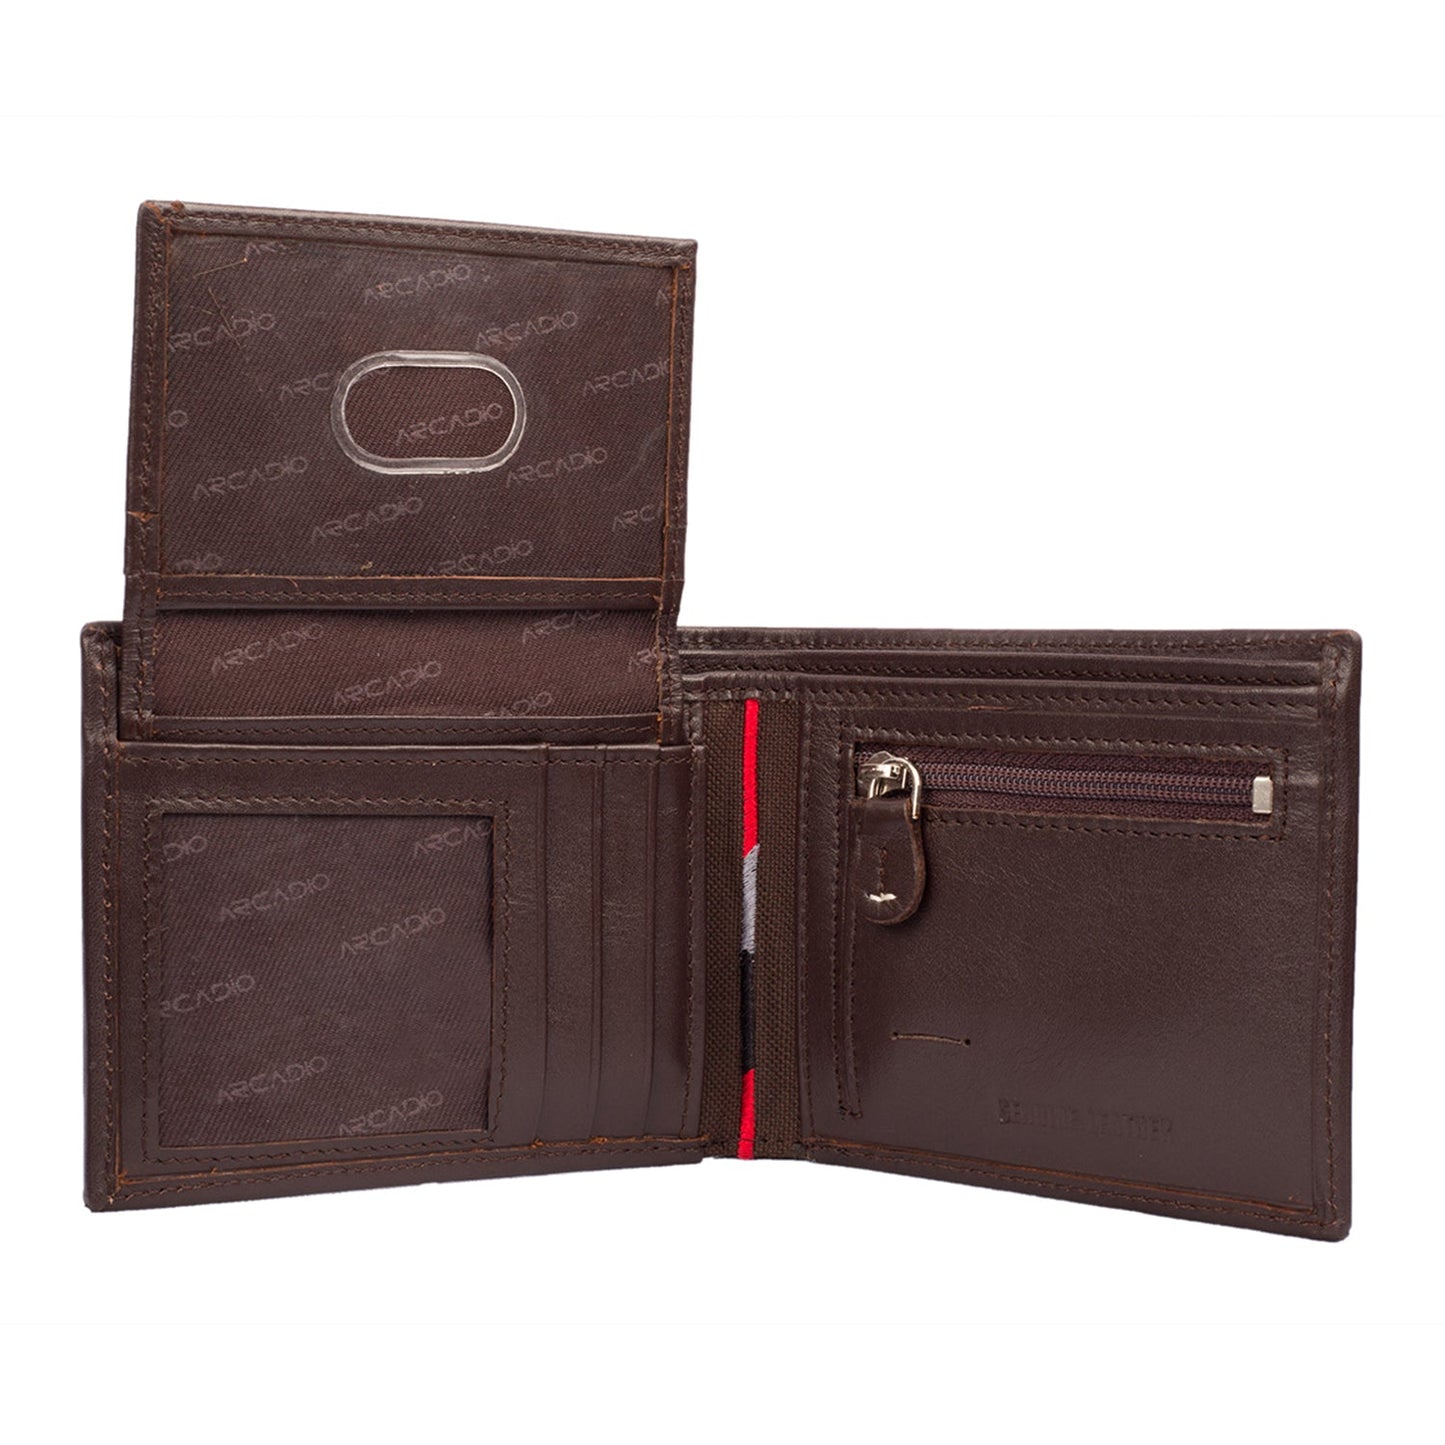 BROWNIE Leather Wallet ARW1002BR ARCADIO